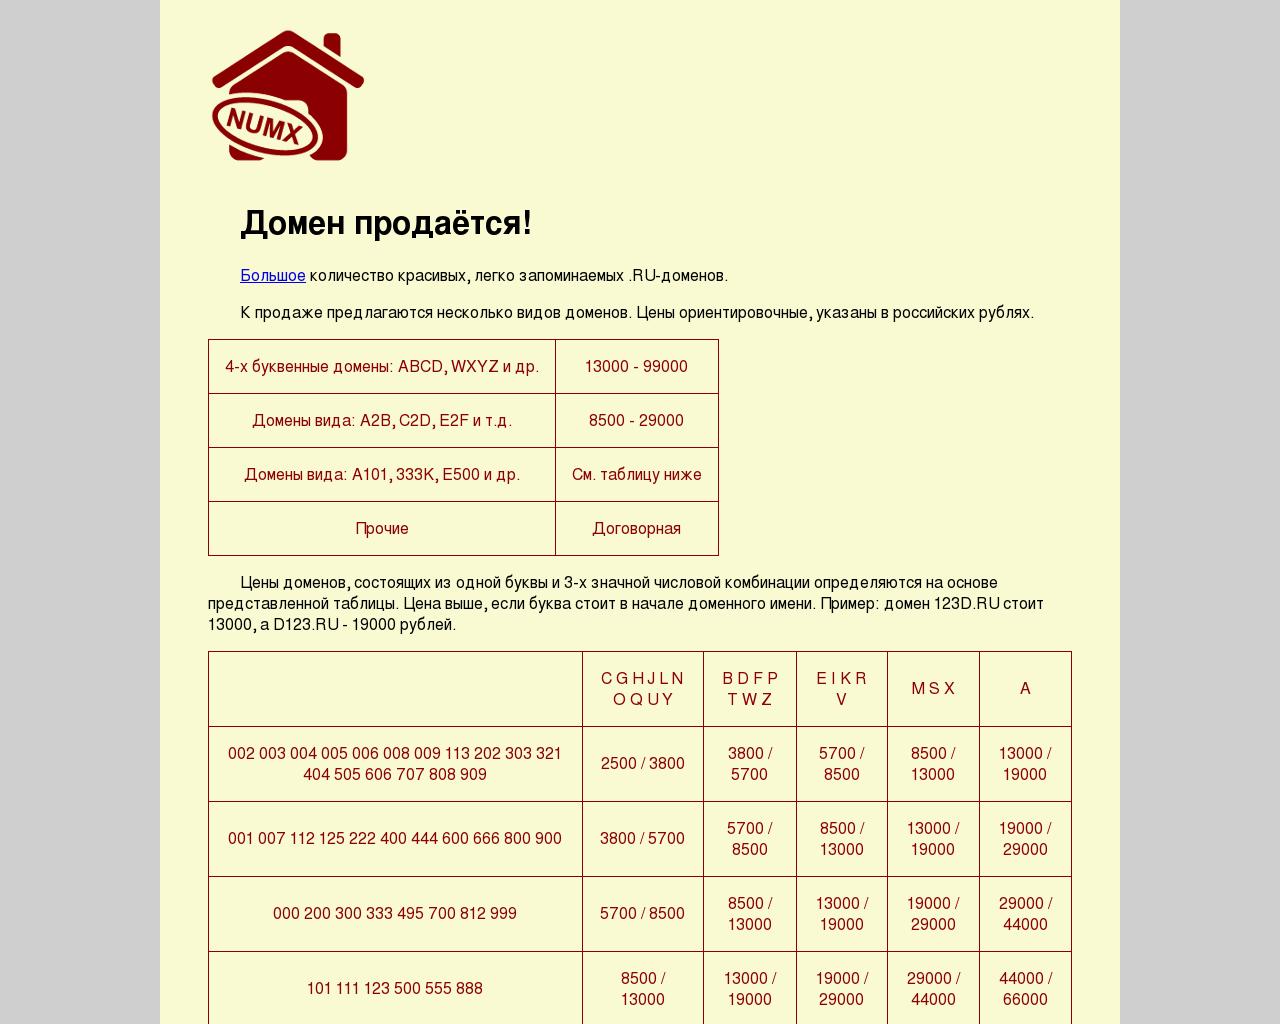 Изображение сайта msnz.ru в разрешении 1280x1024